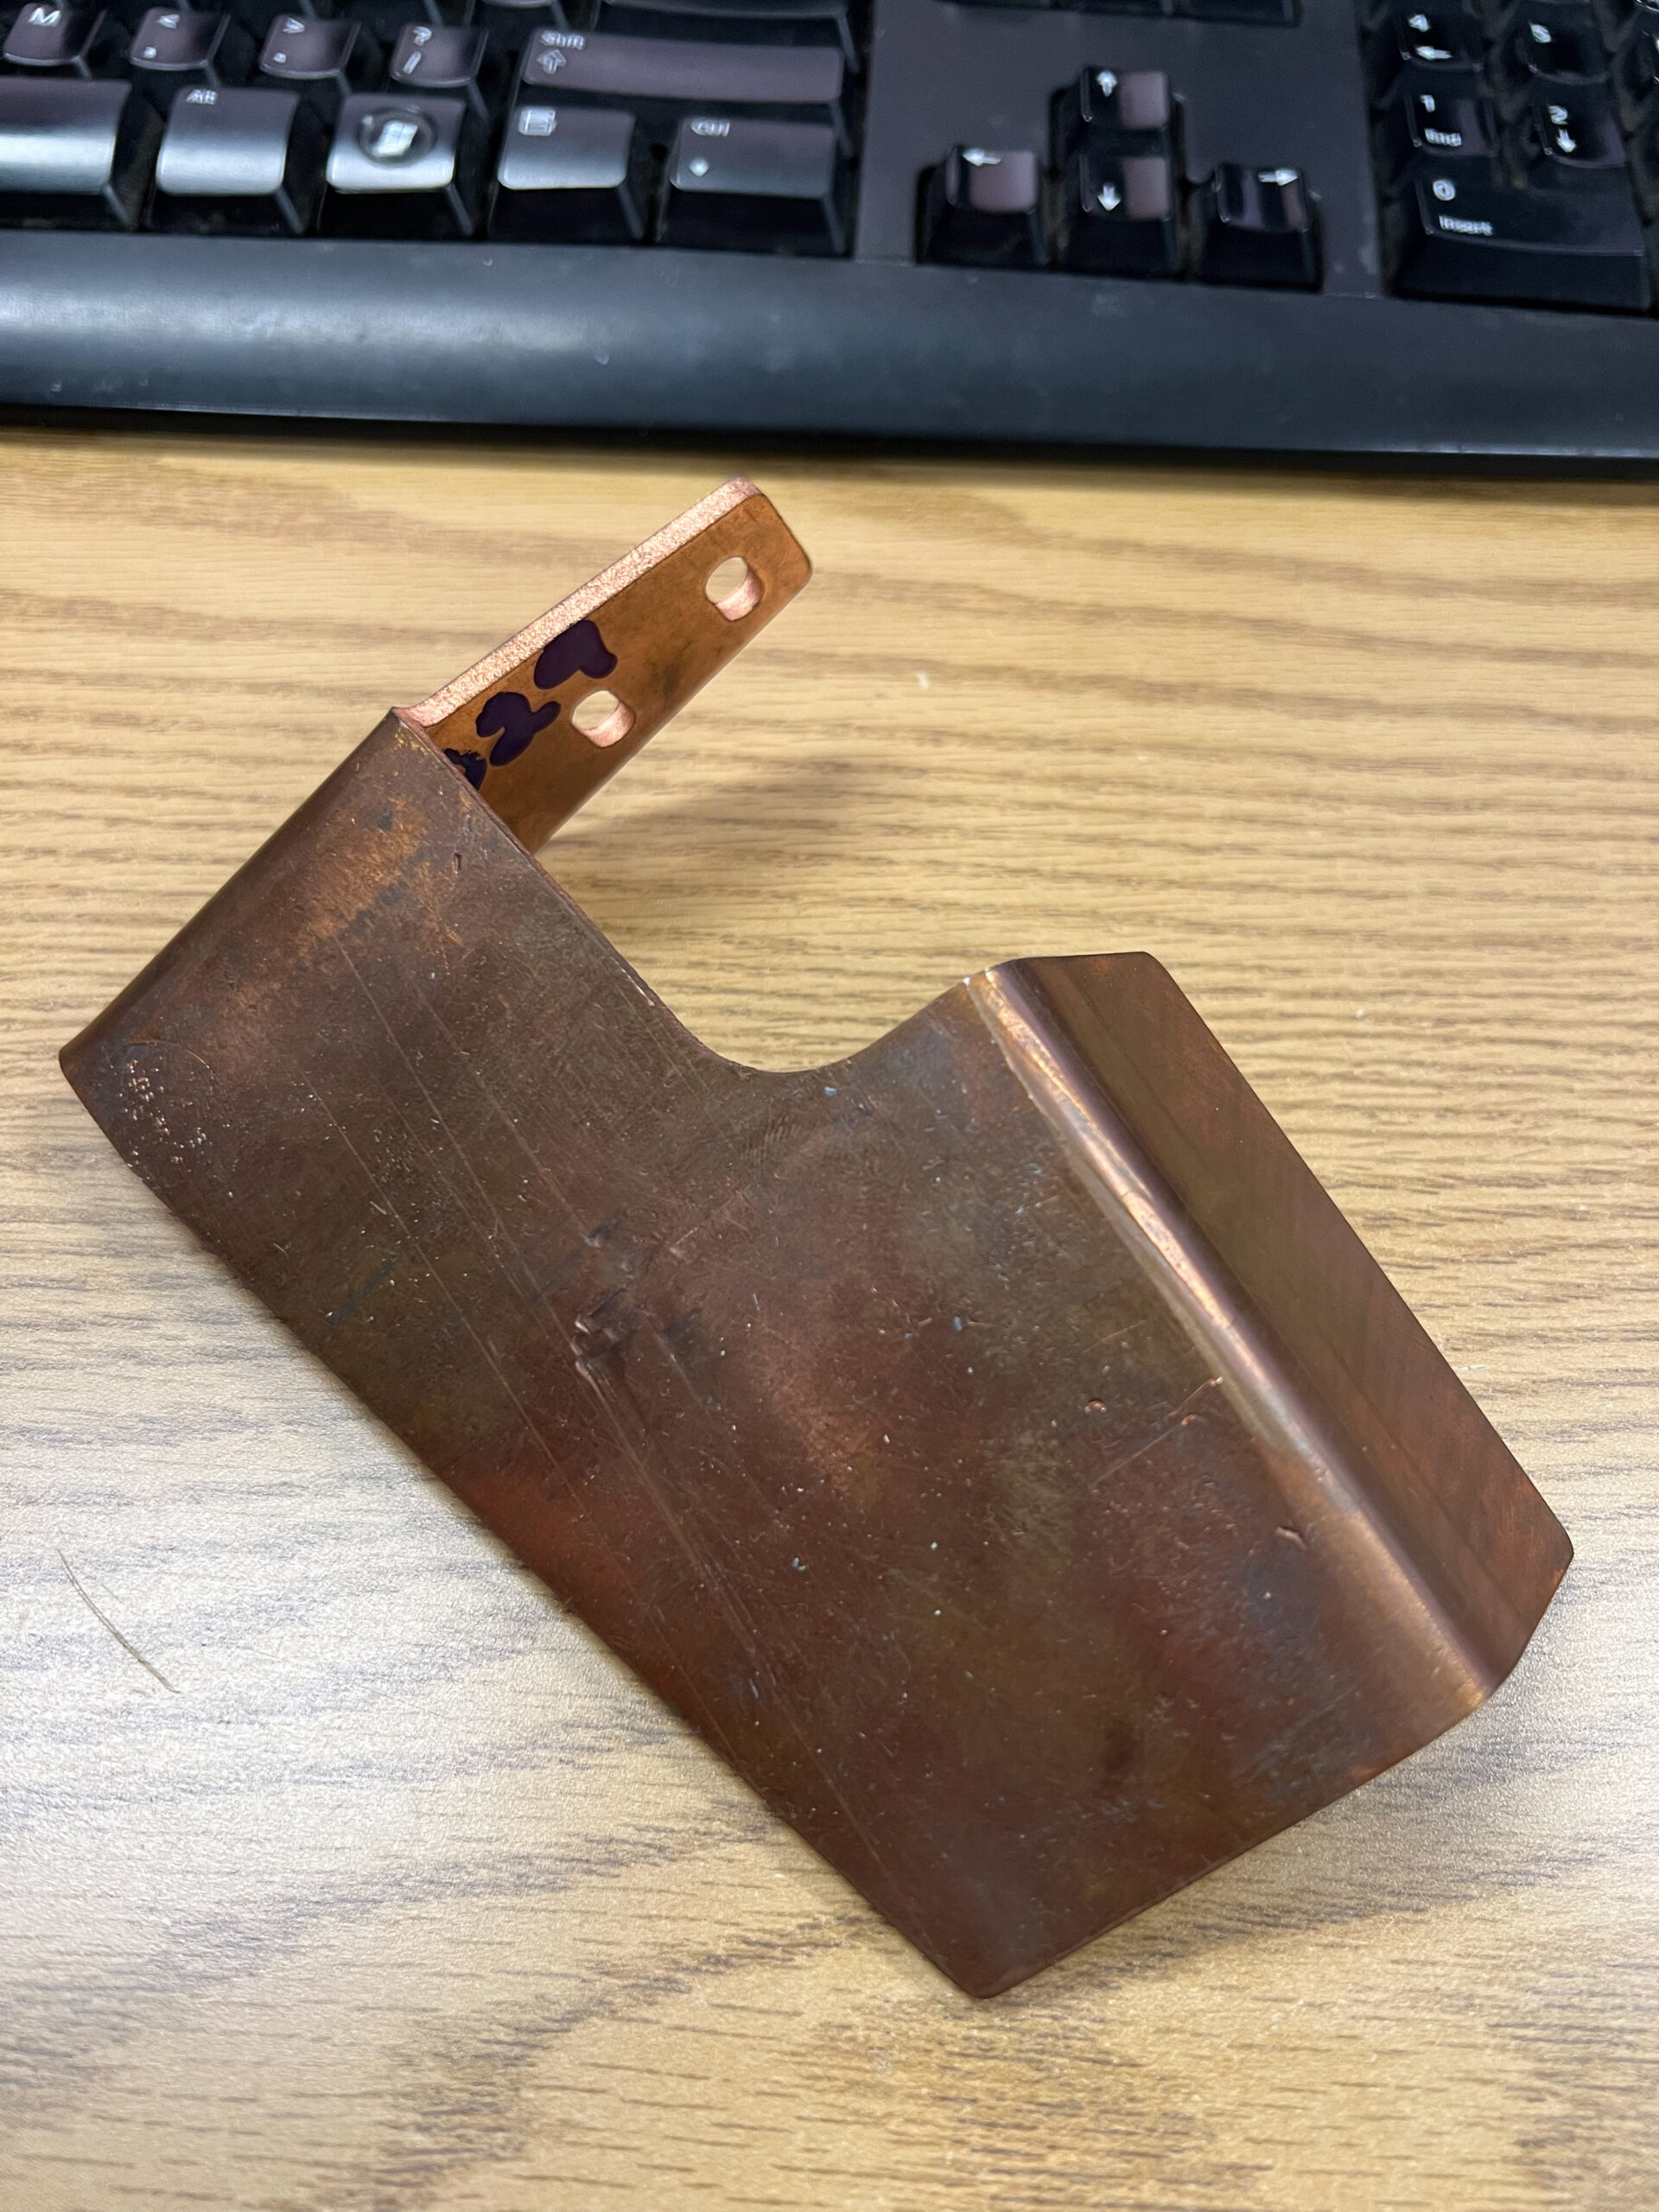 waterjet cut metal piece